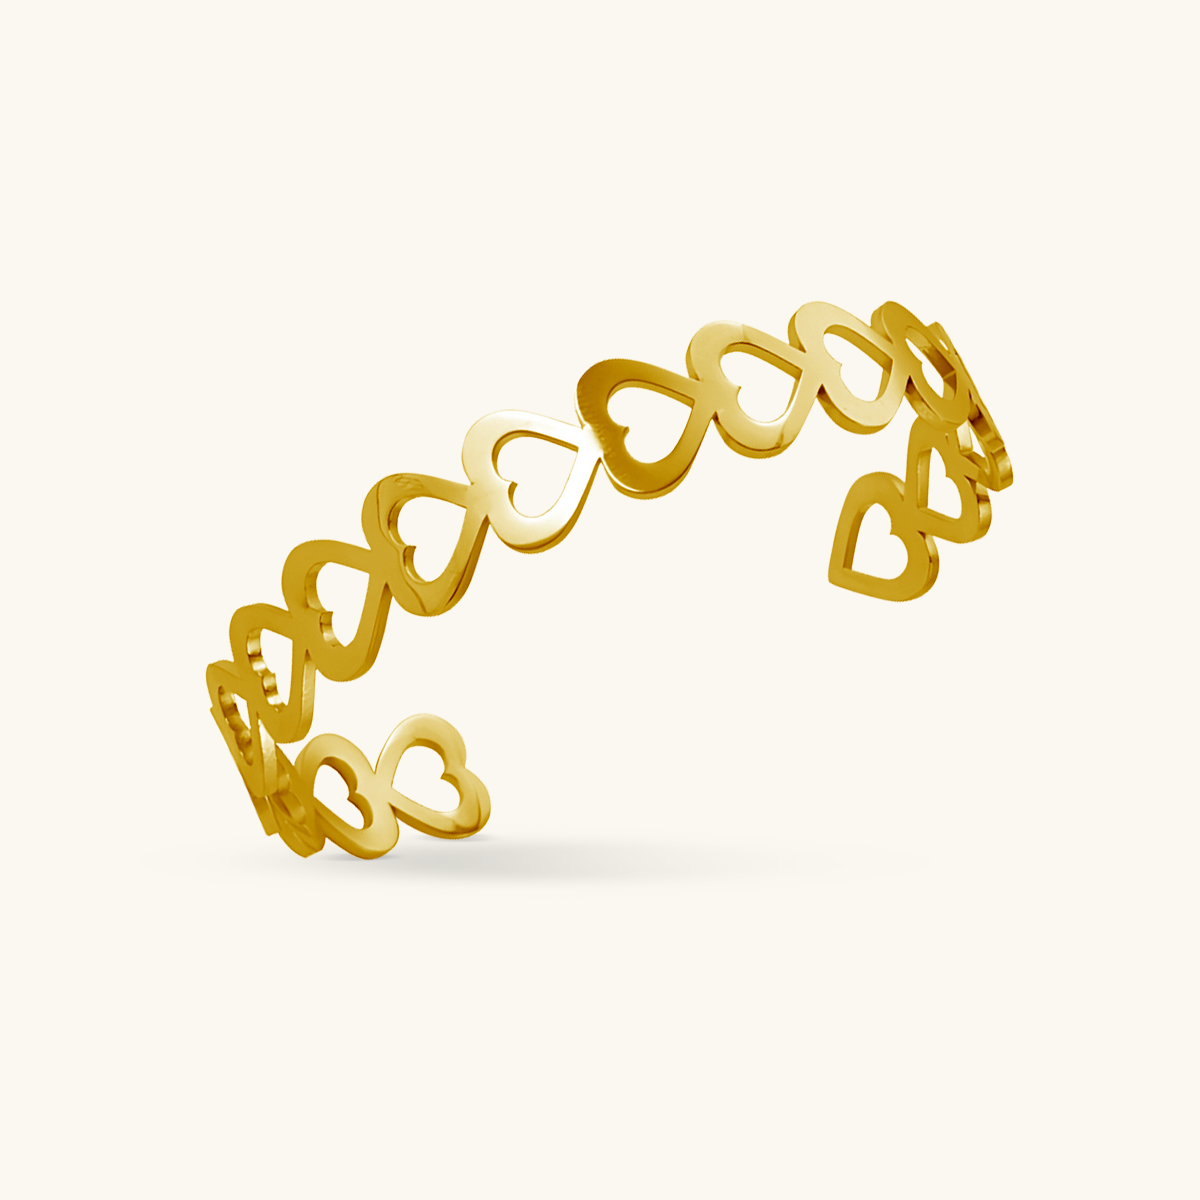 Adored Bangle Bracelet - Gold